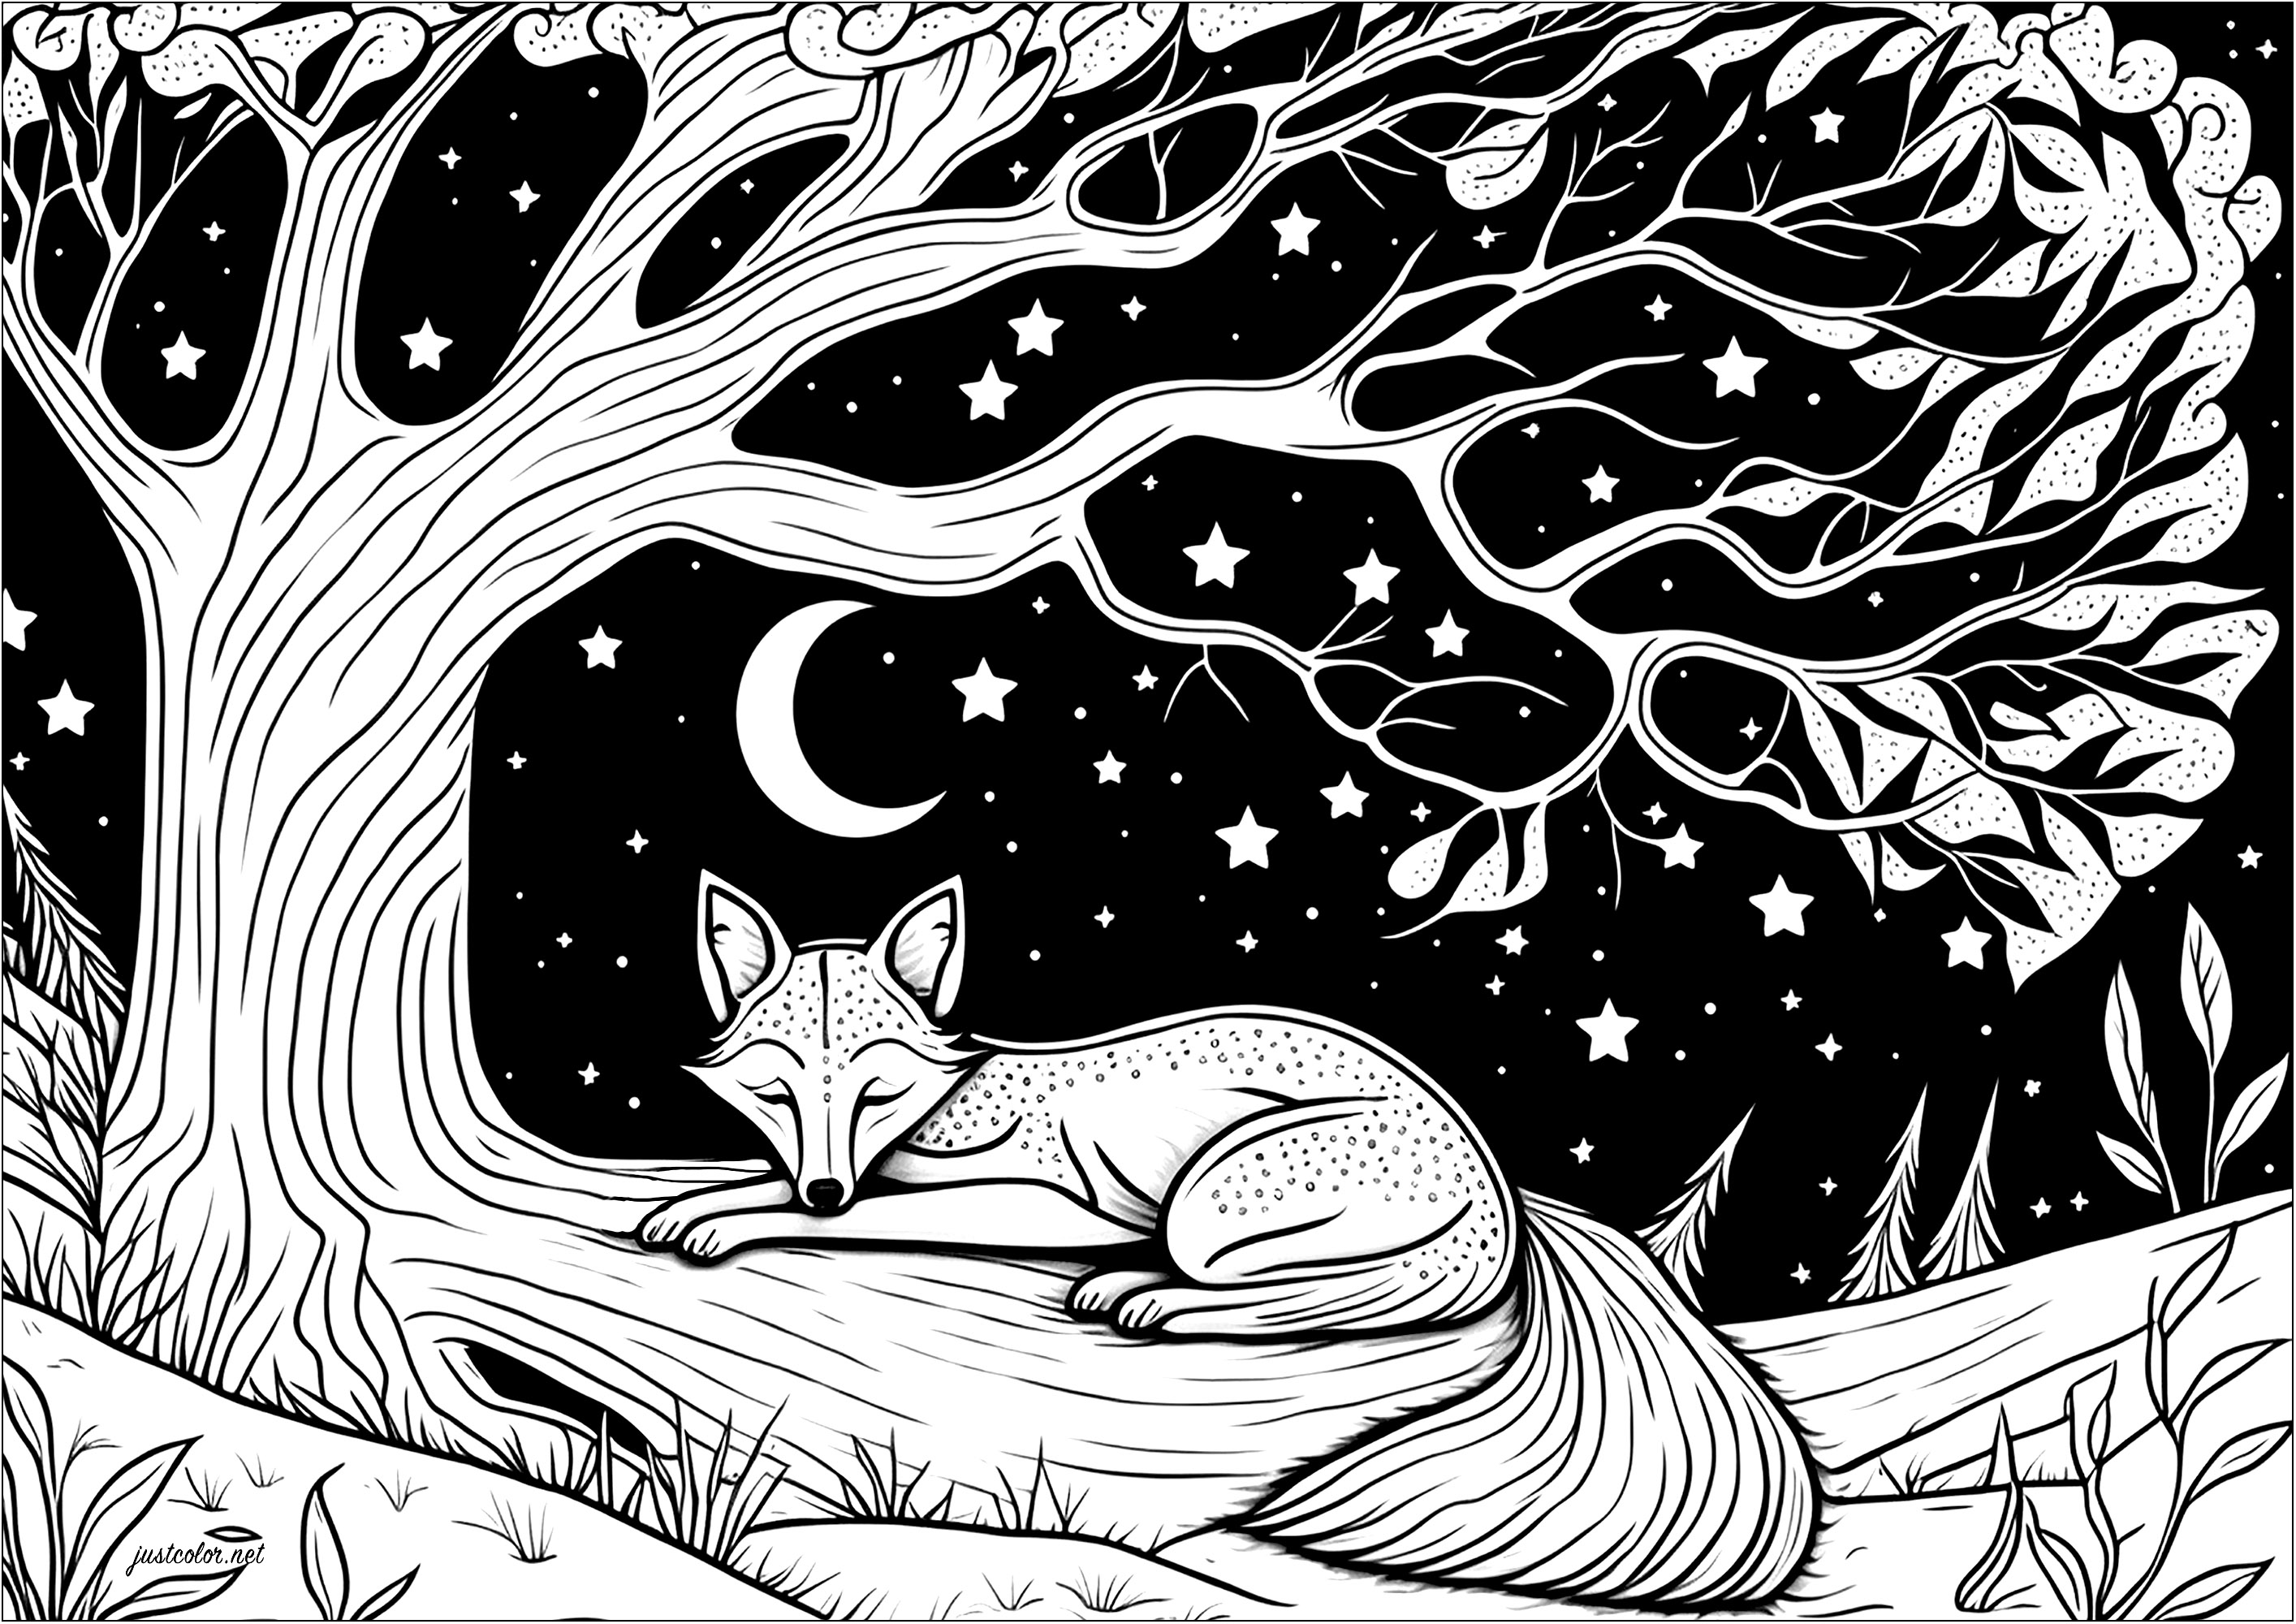 Coloração de uma raposa adormecida deitada num ramo de árvore. Aqui está uma raposa a dormir tranquilamente debaixo de uma árvore magnífica. Sob este céu estrelado, parece que está a sonhar com grandes aventuras!